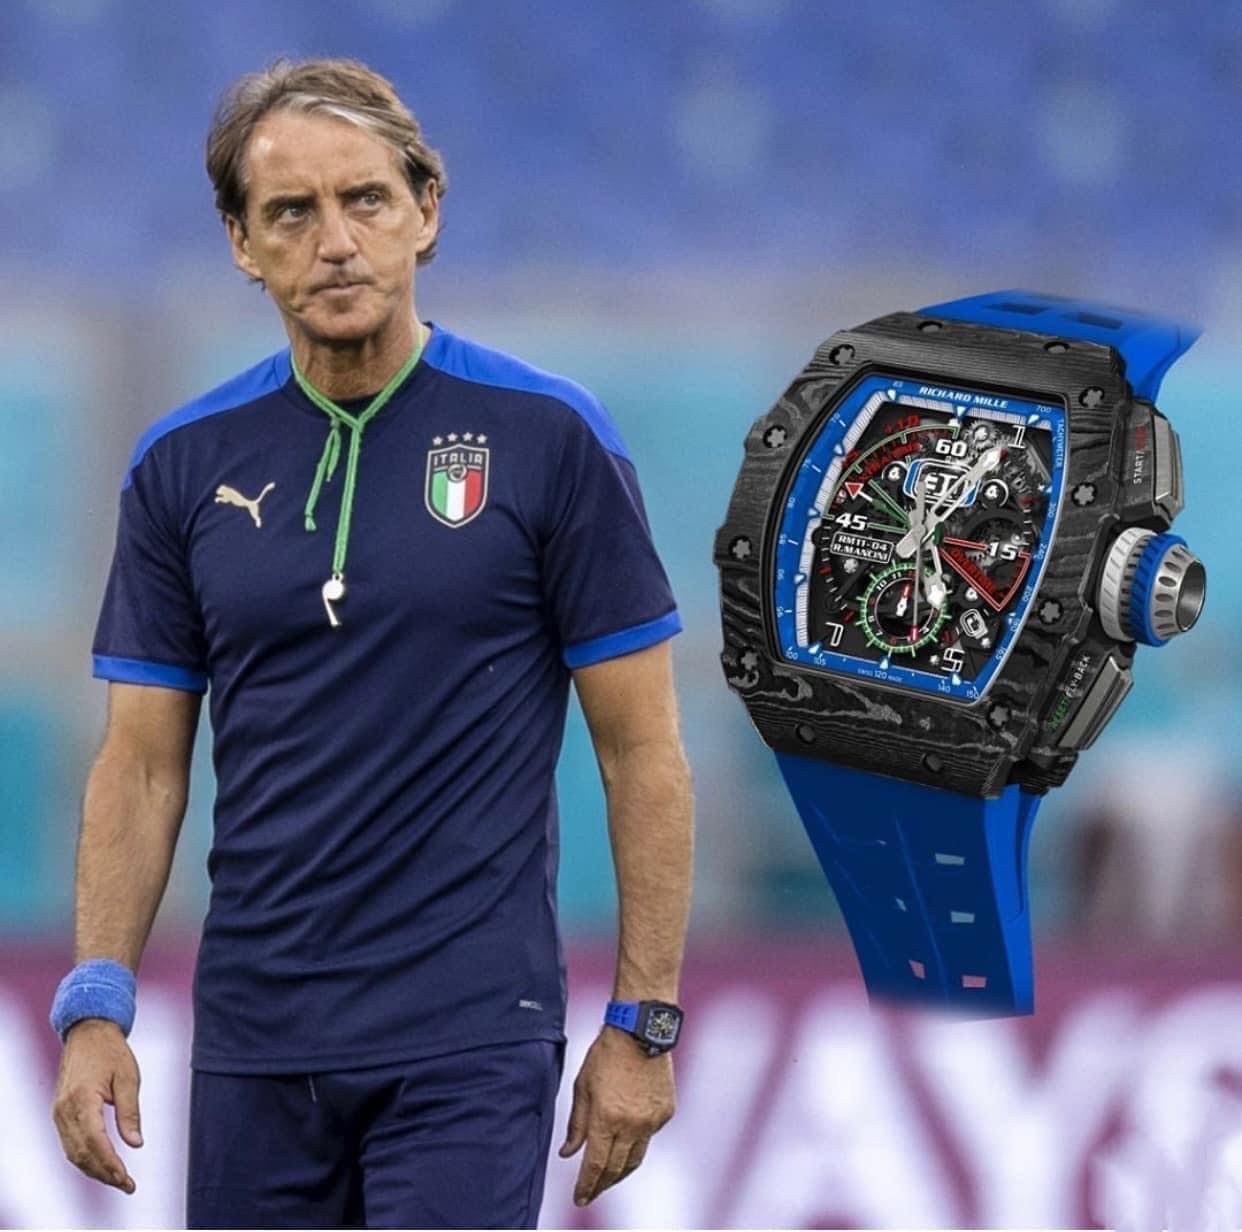 Đồng hồ của HLV trưởng ĐT Italia Roberto Mancini: doanh nhân Đức Huy cũng chưa chắc đã dám mua tặng Cẩm Đan - Ảnh 5